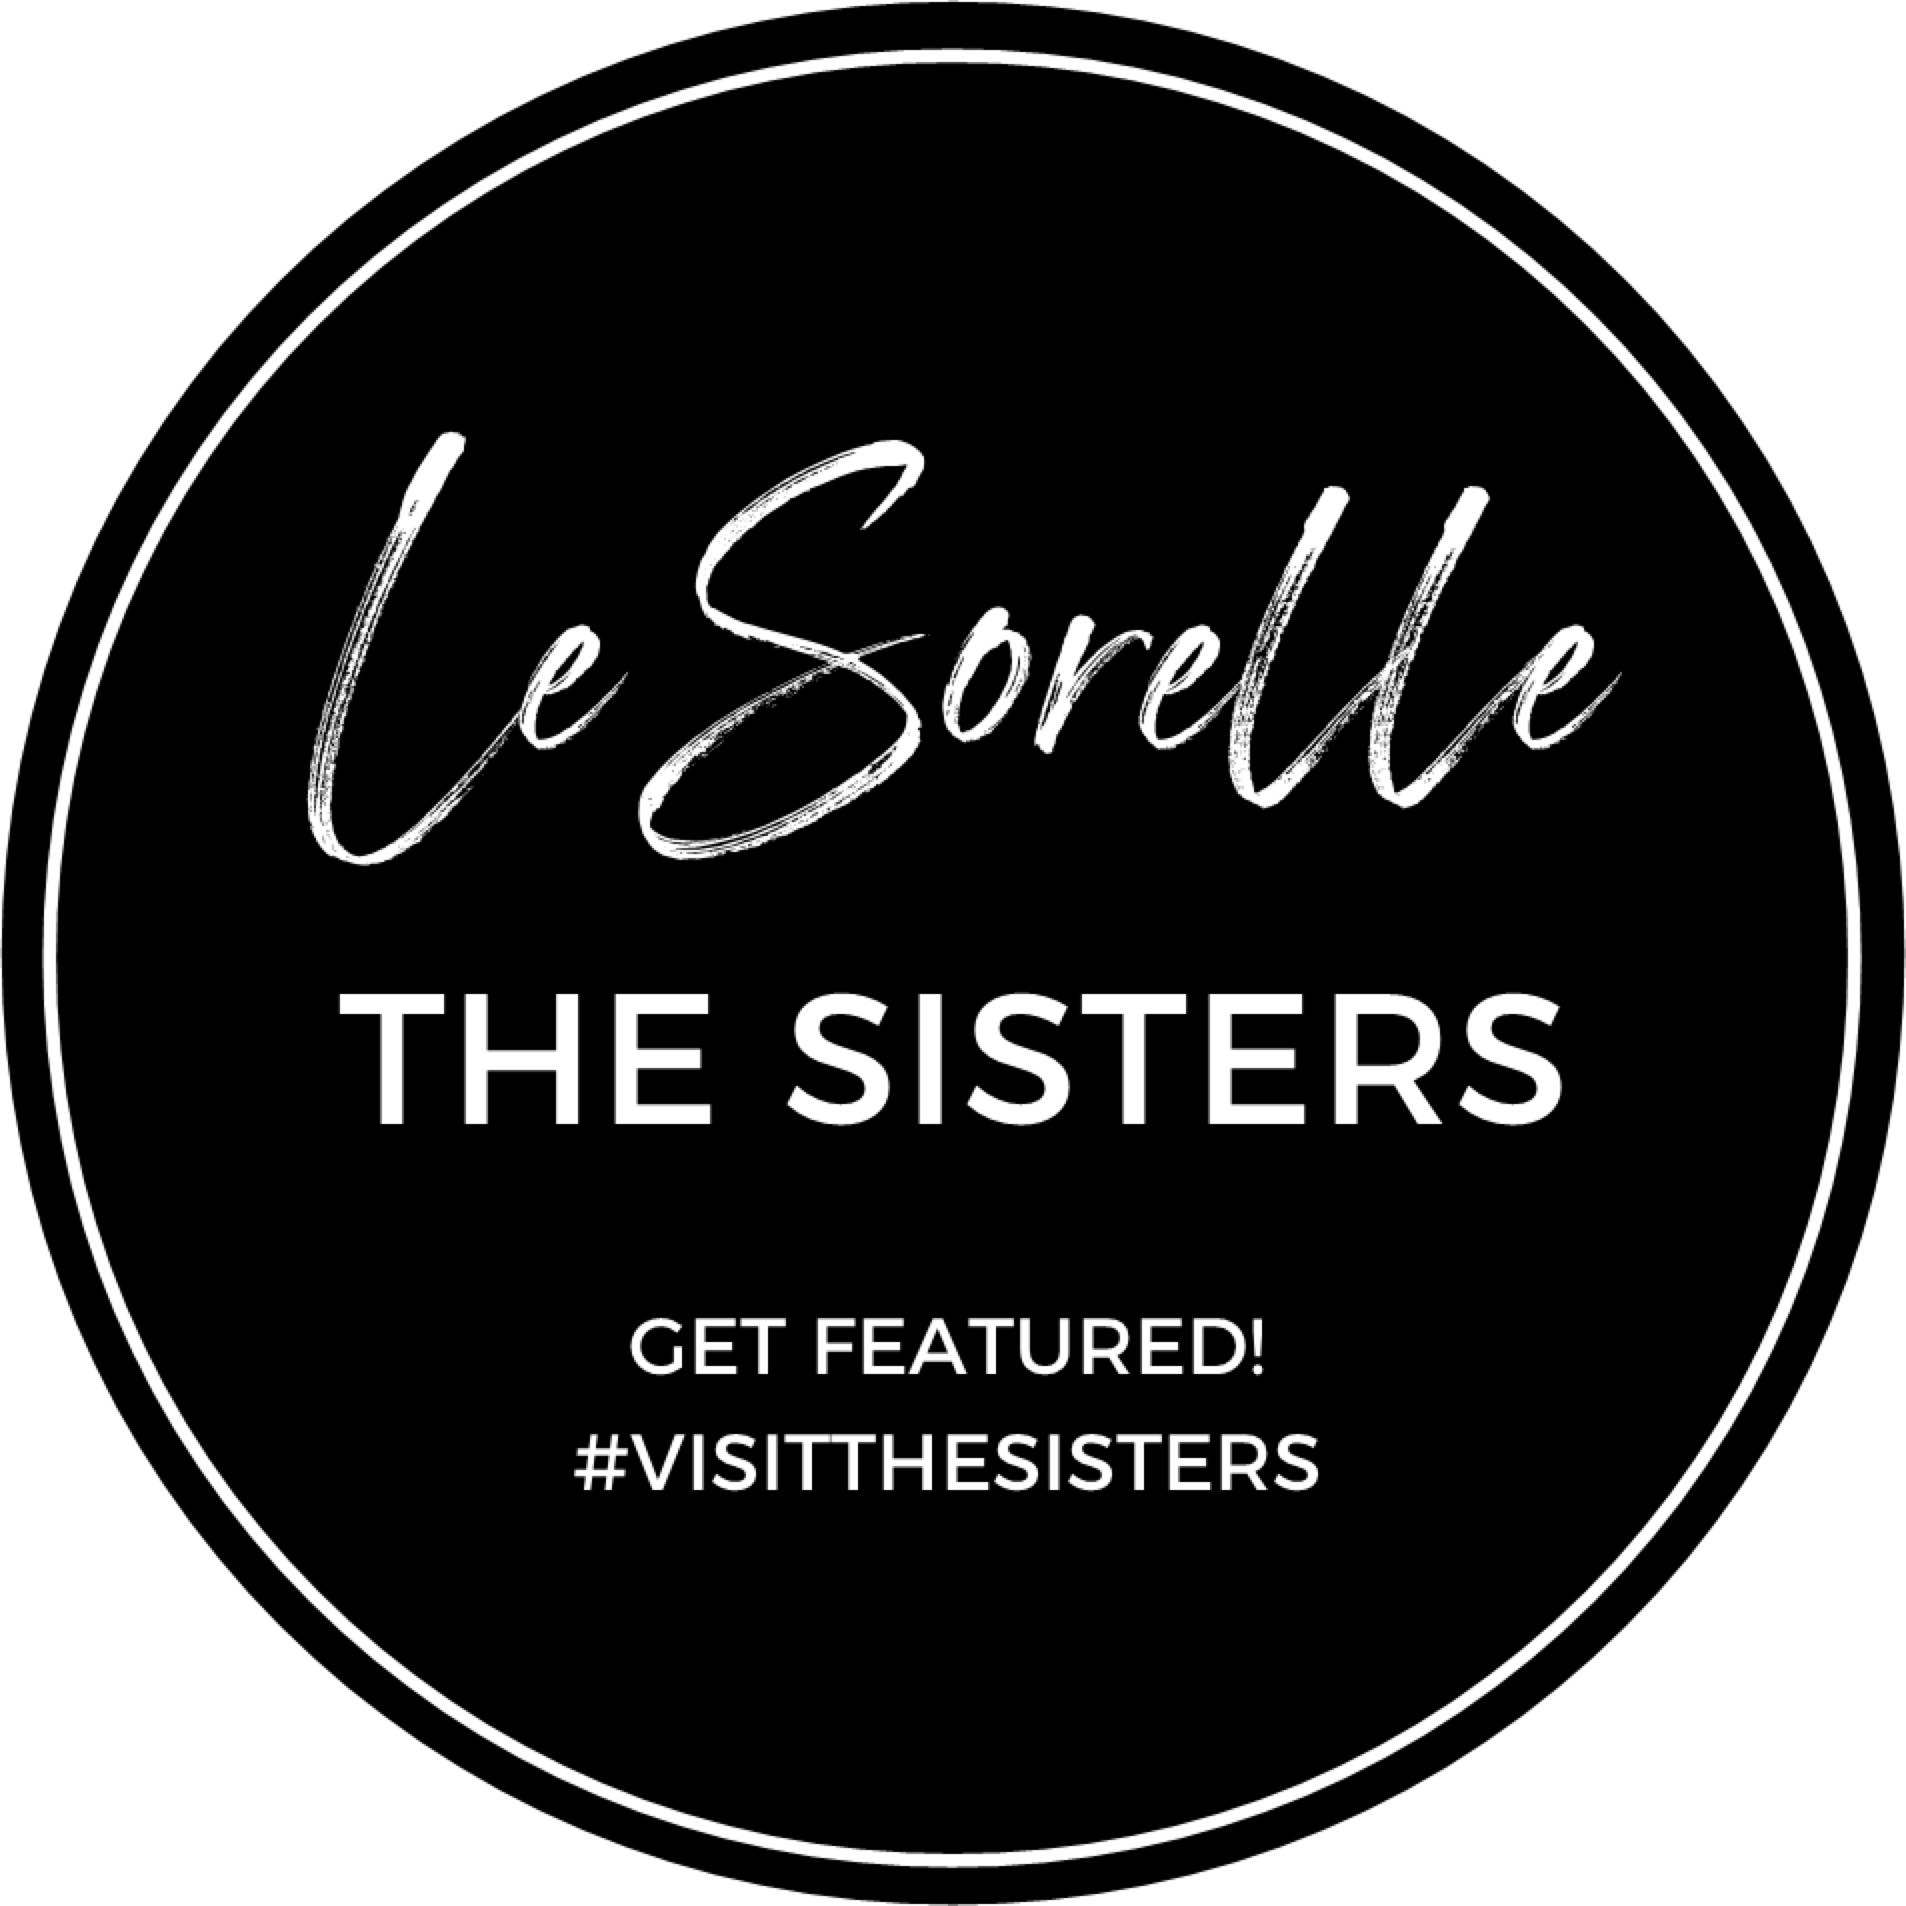 Le Sorelle The Sisters Coffee House Bowen